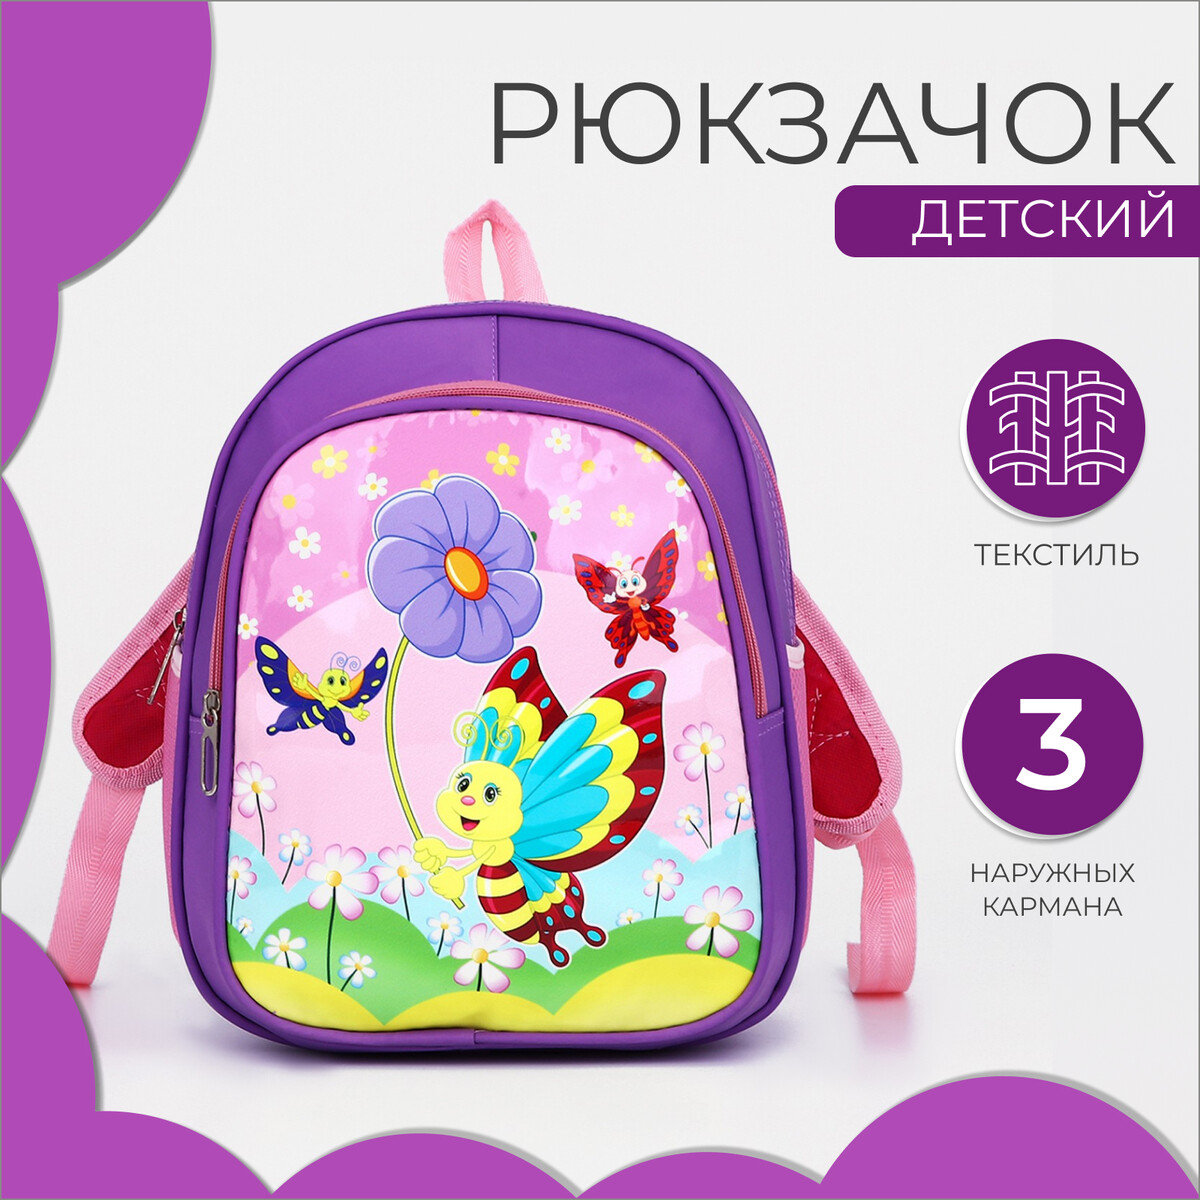 Рюкзак детский на молнии, 3 наружных кармана, цвет фиолетовый рюкзак городской из текстиля на молнии 2 наружных кармана фиолетовый